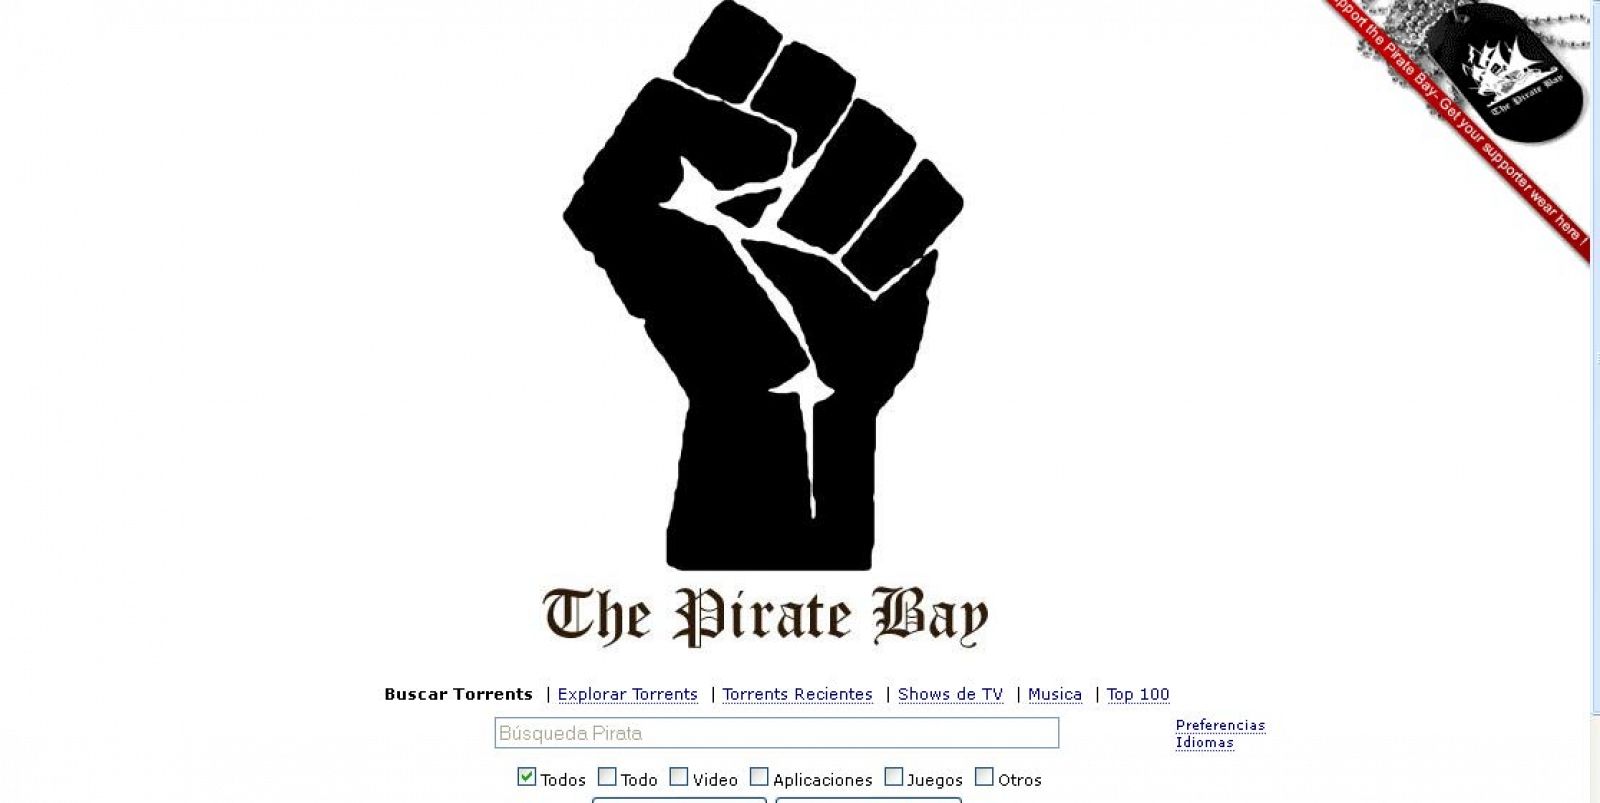 Tras conocerse el fallo, la web de TPB ha cambiado su habitual logotipo de un barco pirata por un puño apretado negro